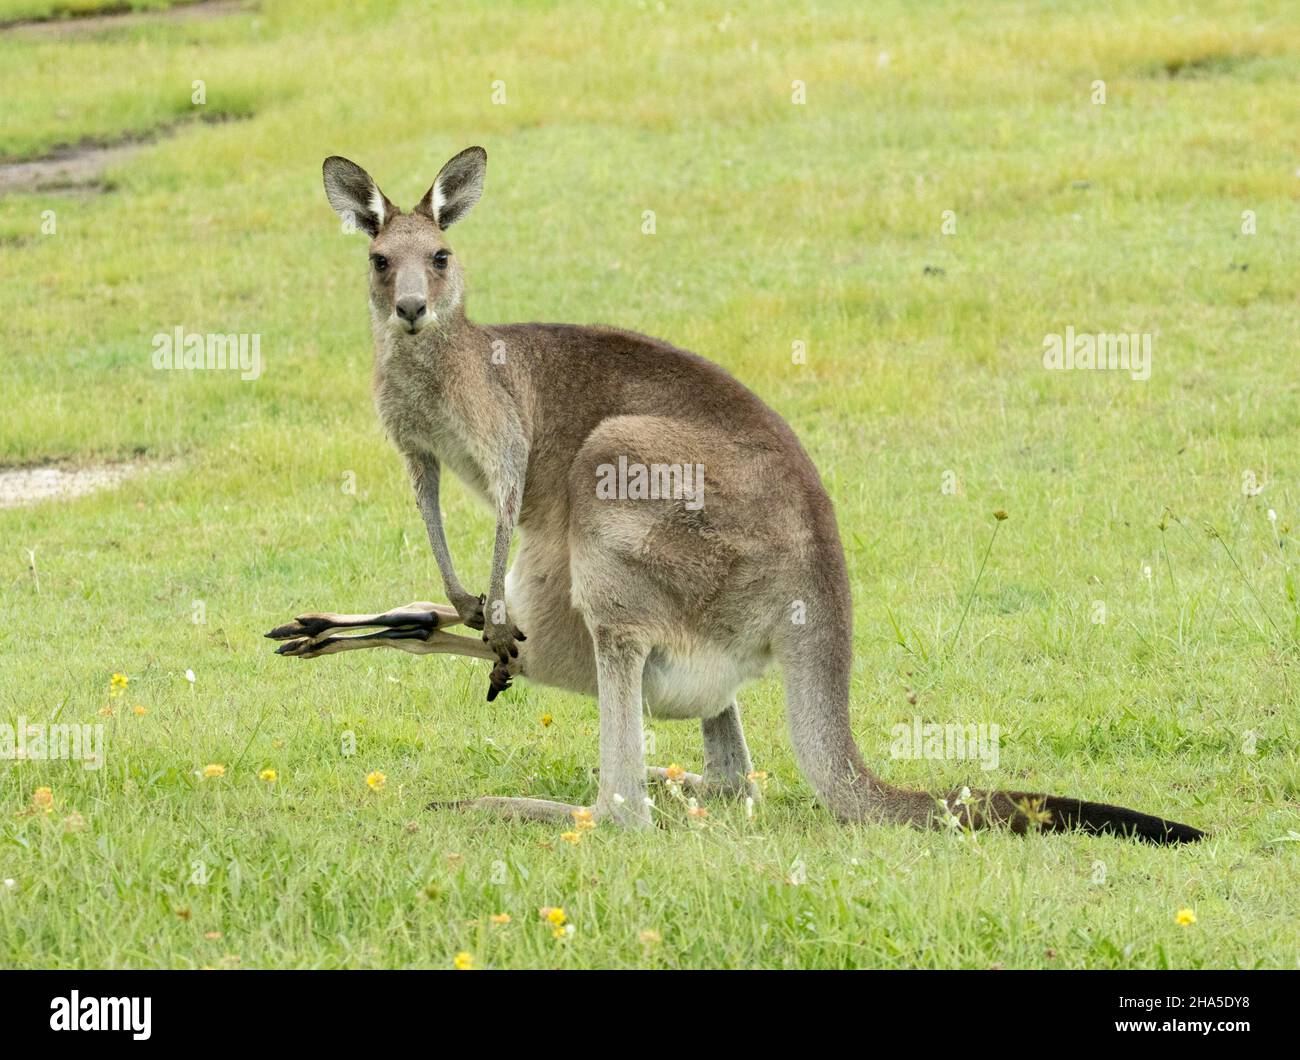 Canguro gris oriental con piernas largas de joey que sobresalen de su bolsa, mirando la cámara, en la naturaleza en Australia. Foto de stock